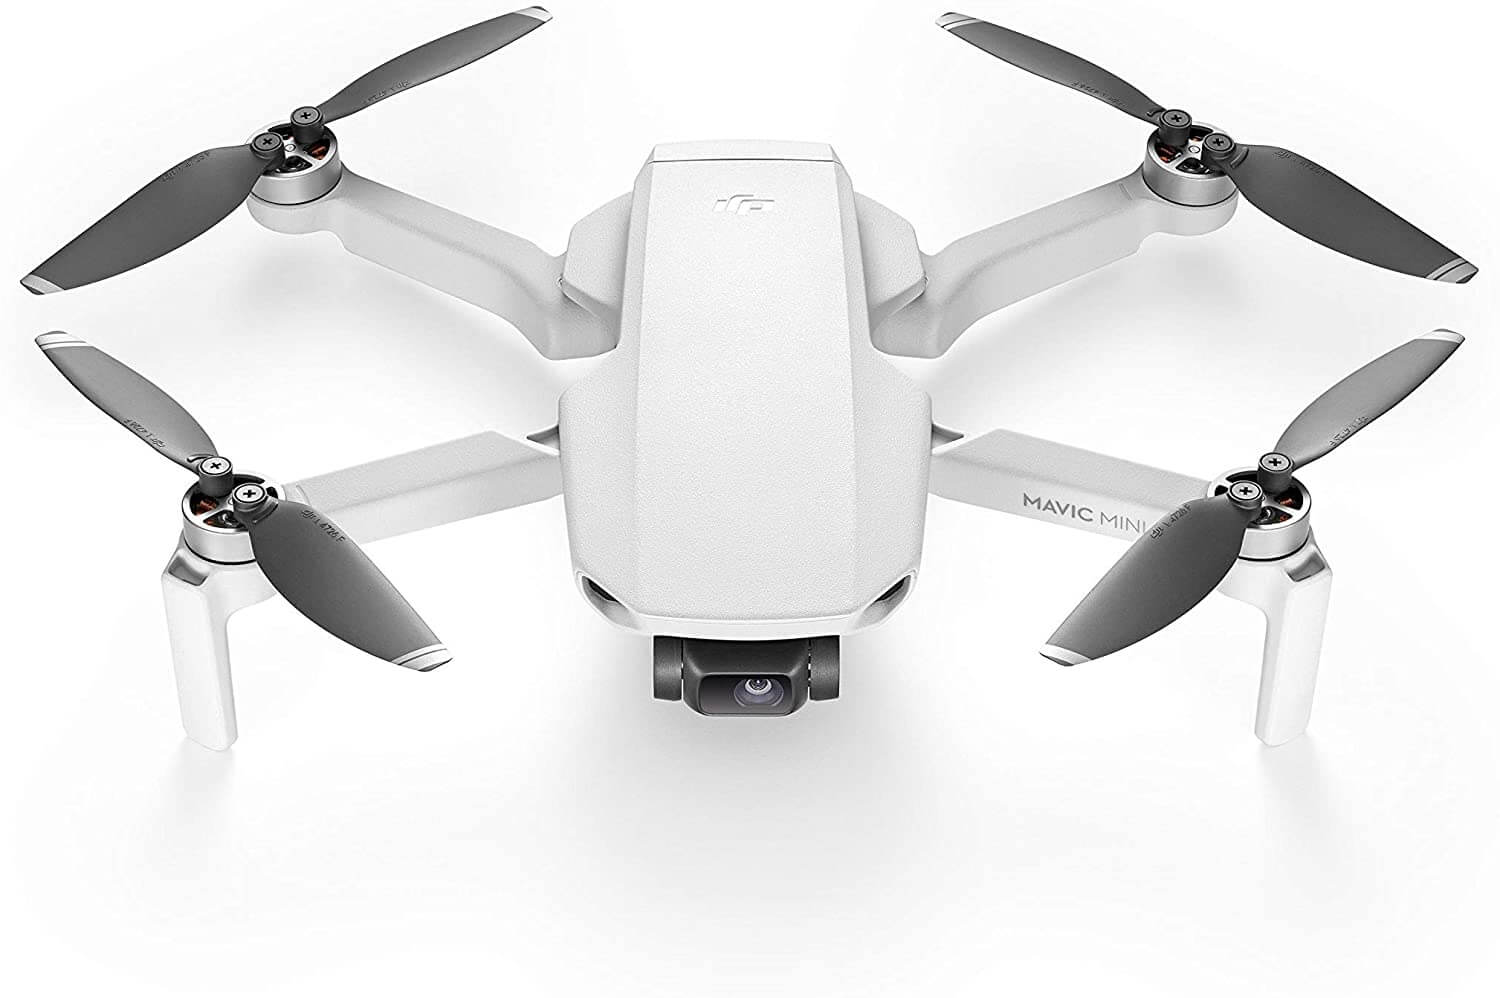 dji mini drone for sale